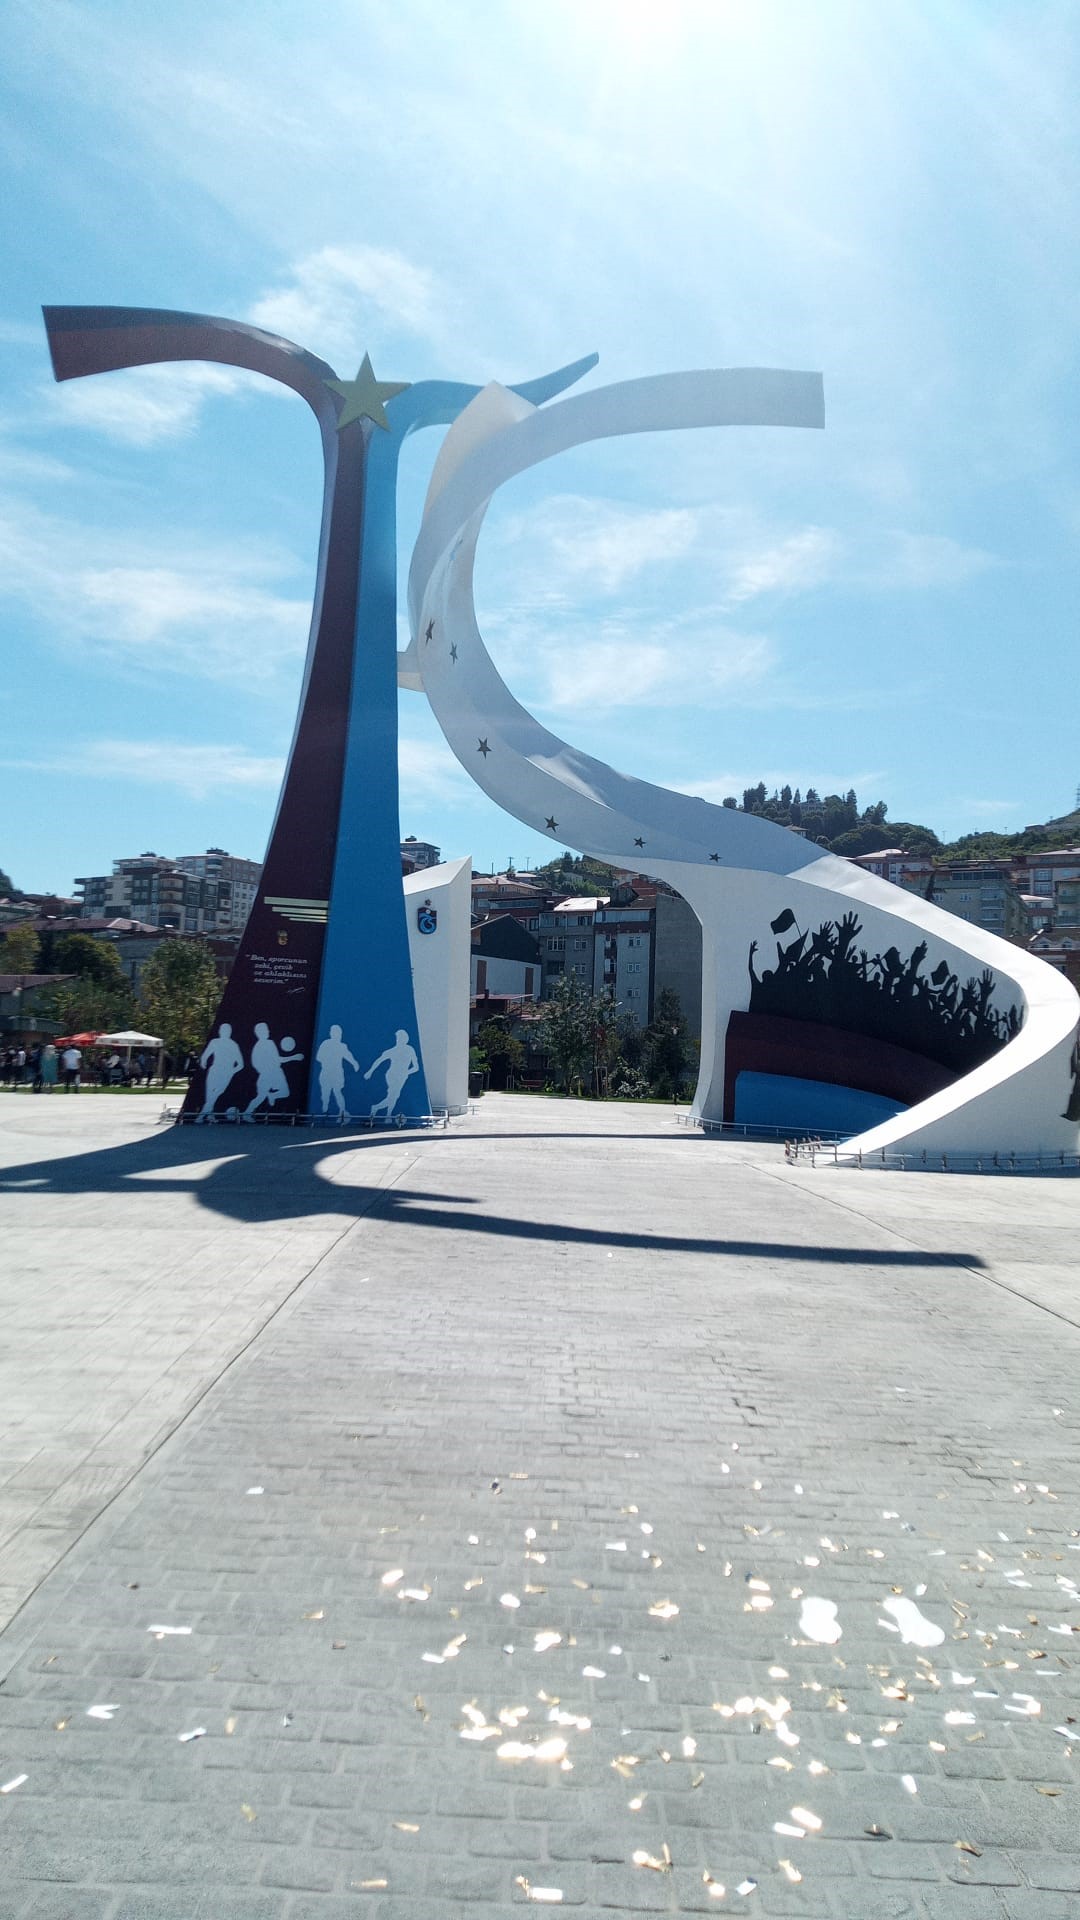 Trabzonspor'un Şampiyonluk Anıtı açıldı! Dikkat çeken yıldız detayı...